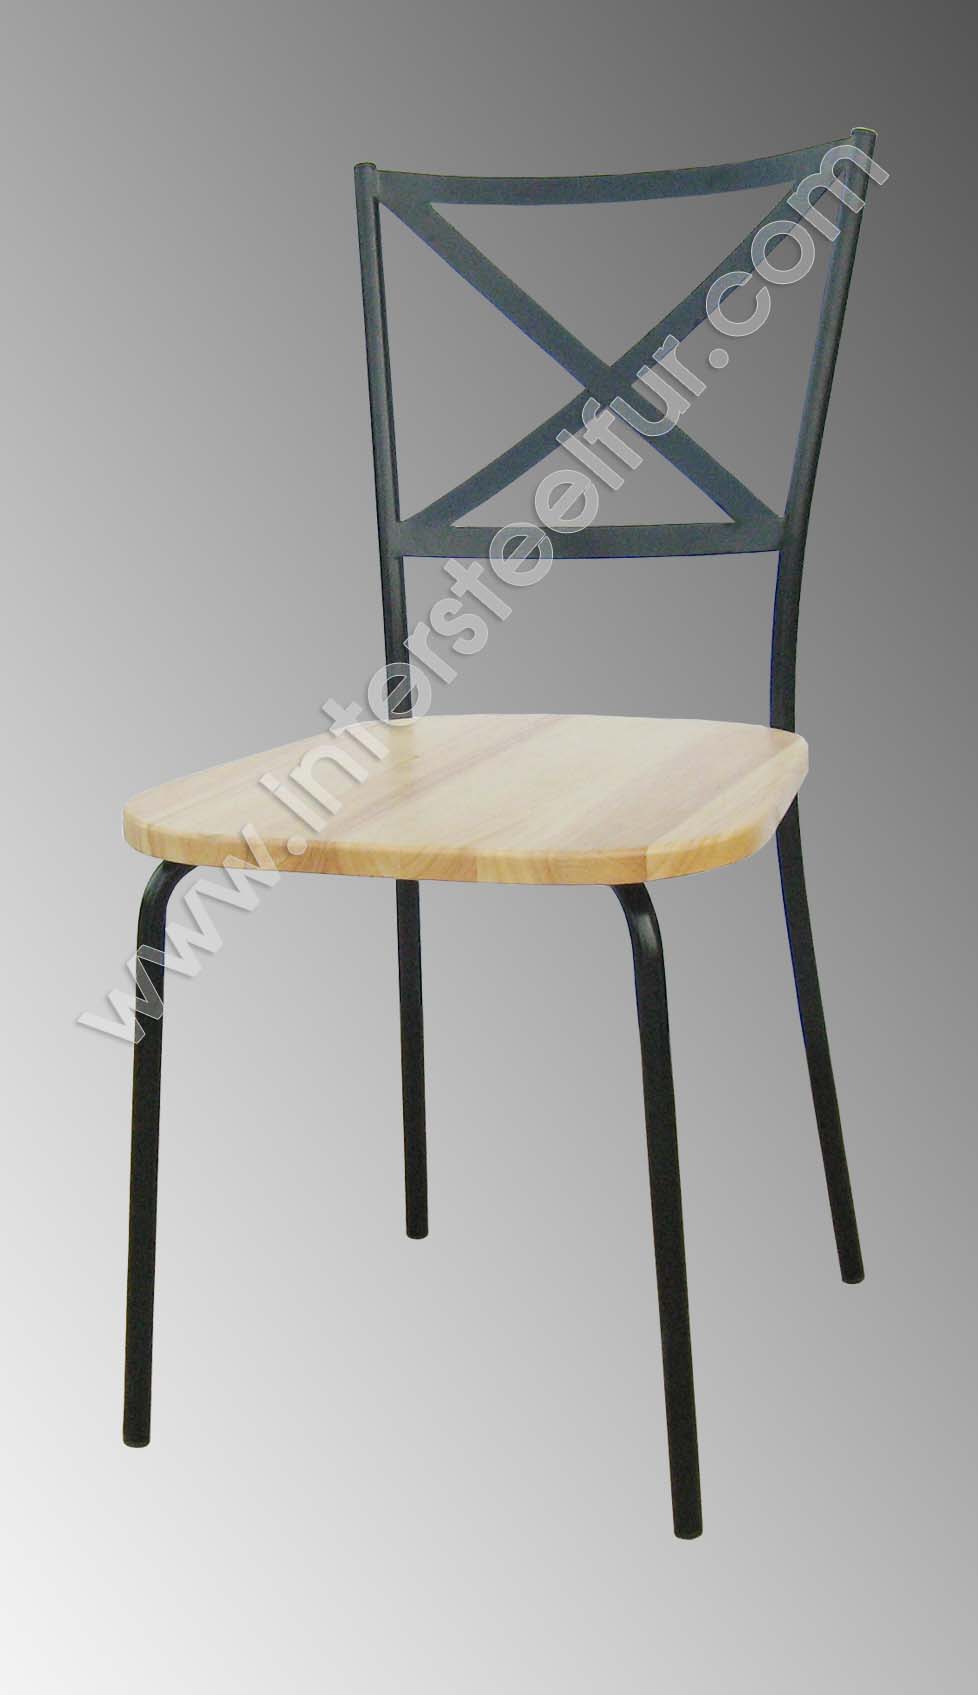 เก้าเหล็กราคาถูกๆ สไตร์โมเดิอร์ จากโรงงานทางเราผลิตเอง สนใจติดต่อที่ คุณเจน T.0860239810 รูปที่ 1